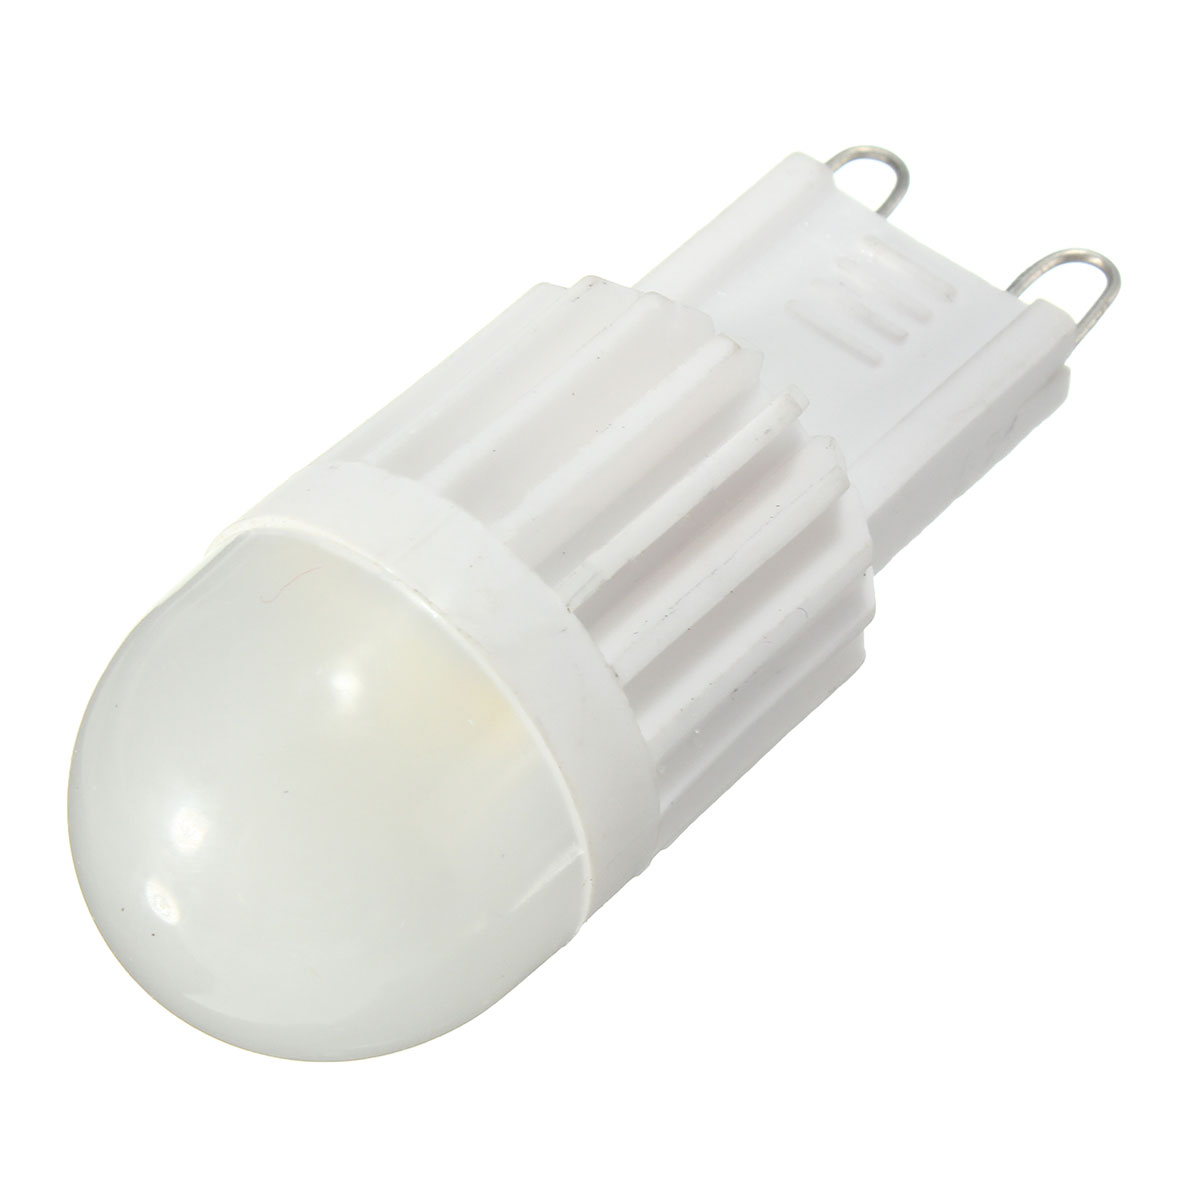 Dimmable-G9-25W-230Lm-Ceramics-LED-COB-Warm-White-Natural-White-Light-Lamp-Bulb-AC110V220V-1058526